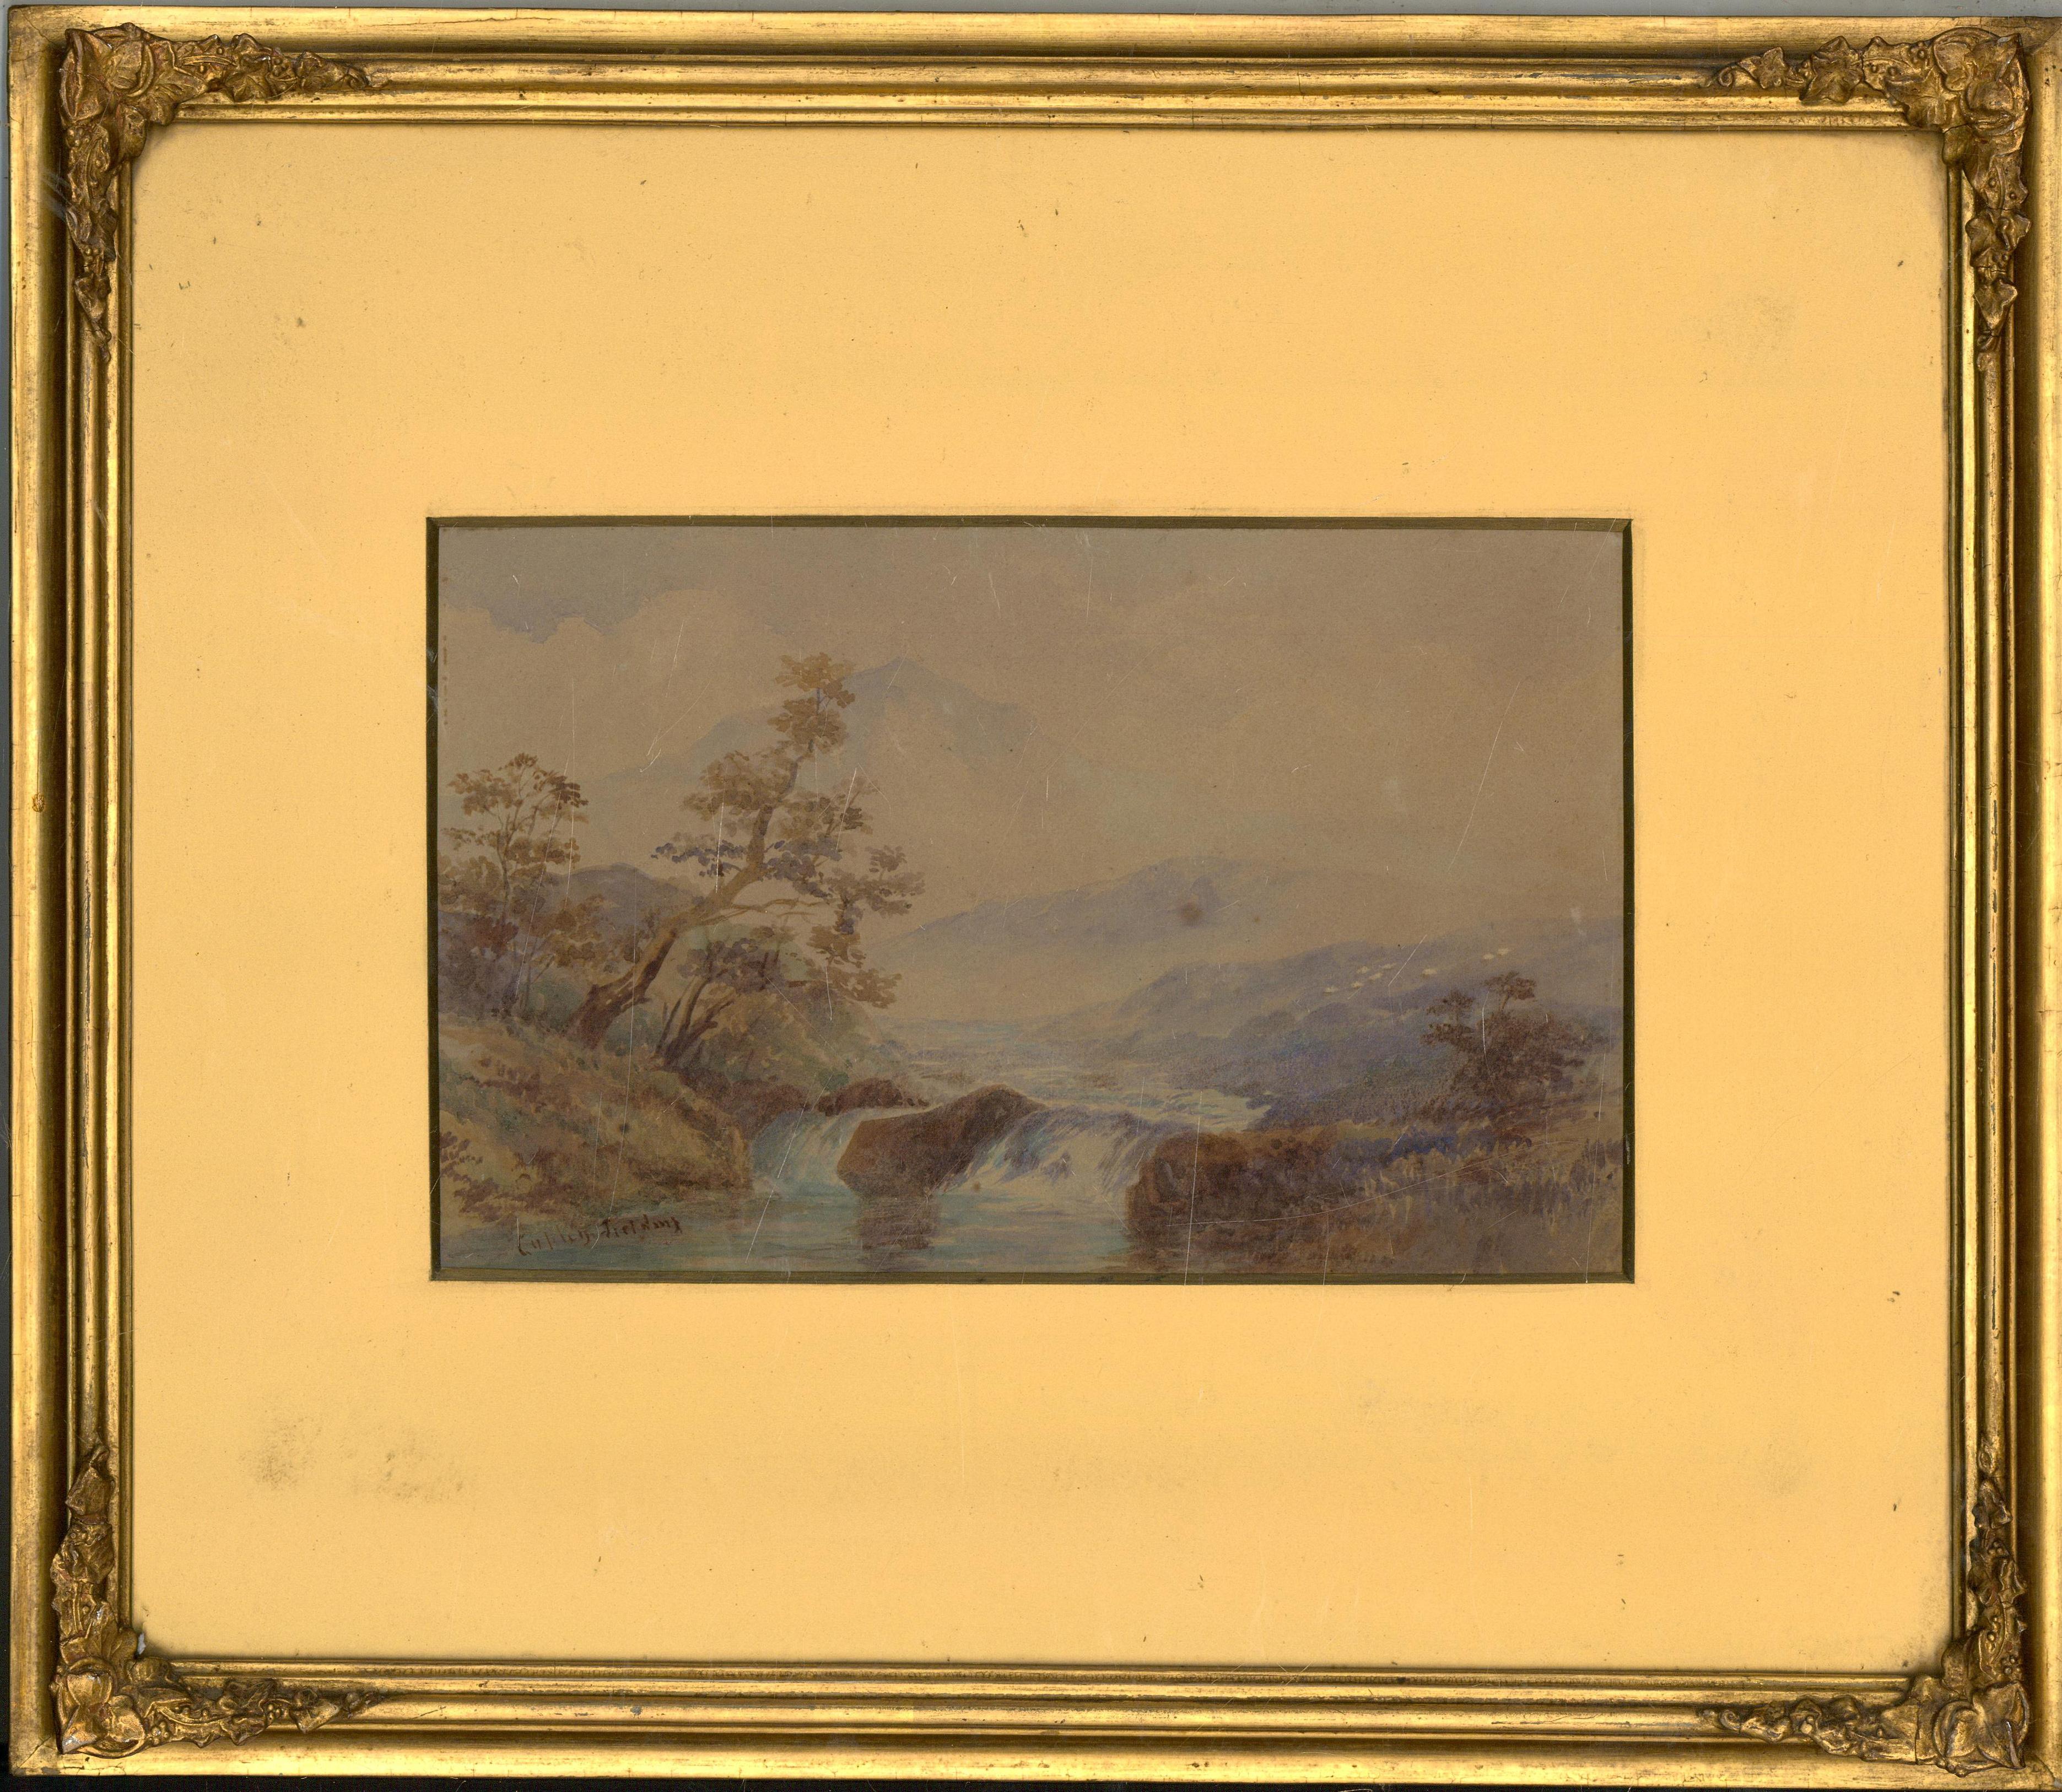 Unknown Landscape Art - Copley Fielding (1787-1855) - Early 19th Century Watercolour, River Scene